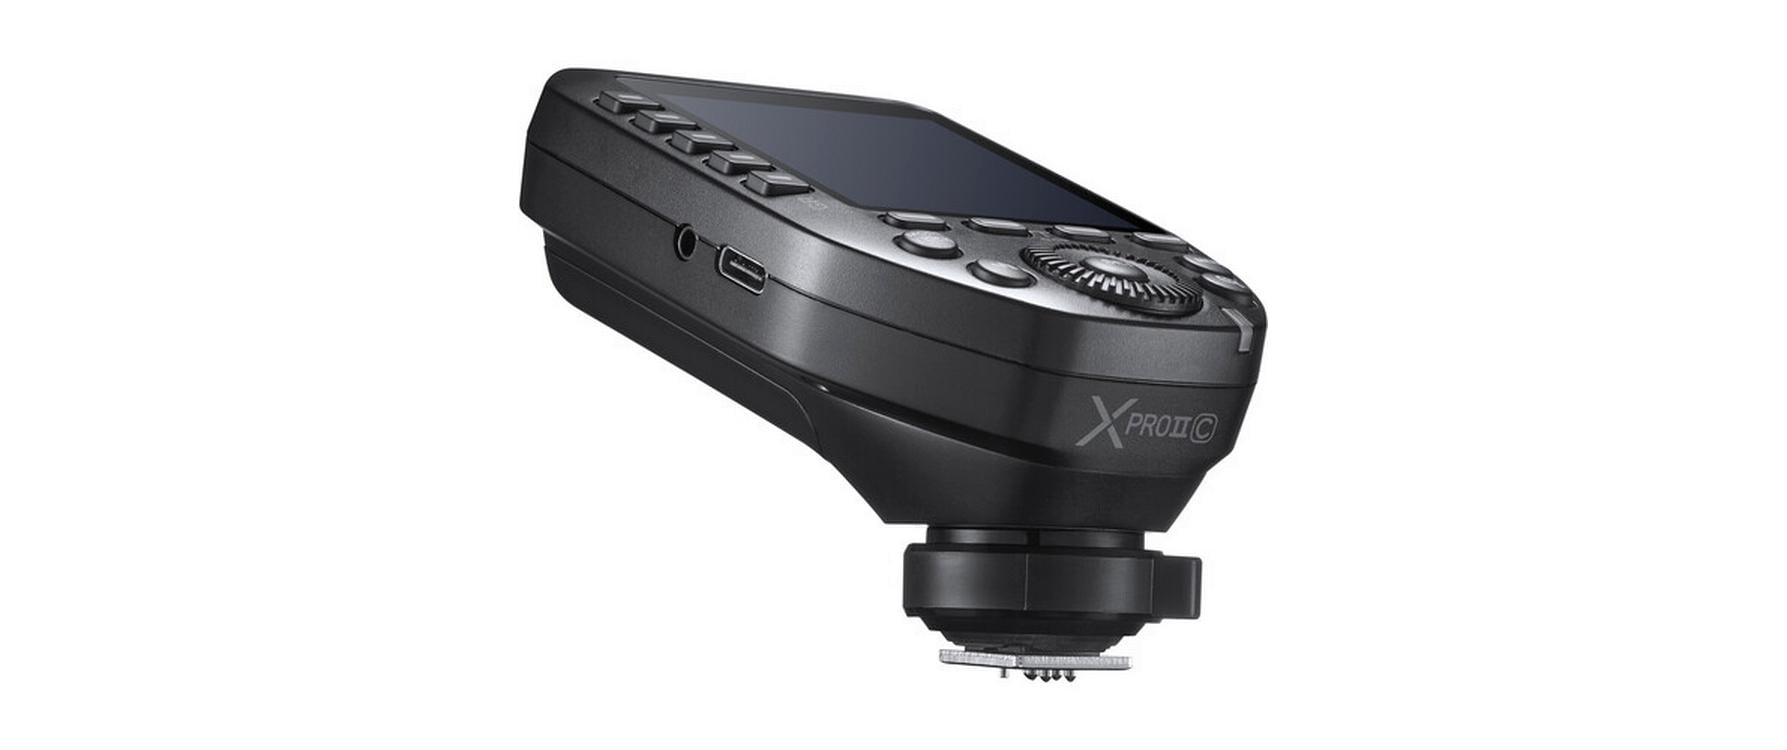 Godox Sender XPro II Canon